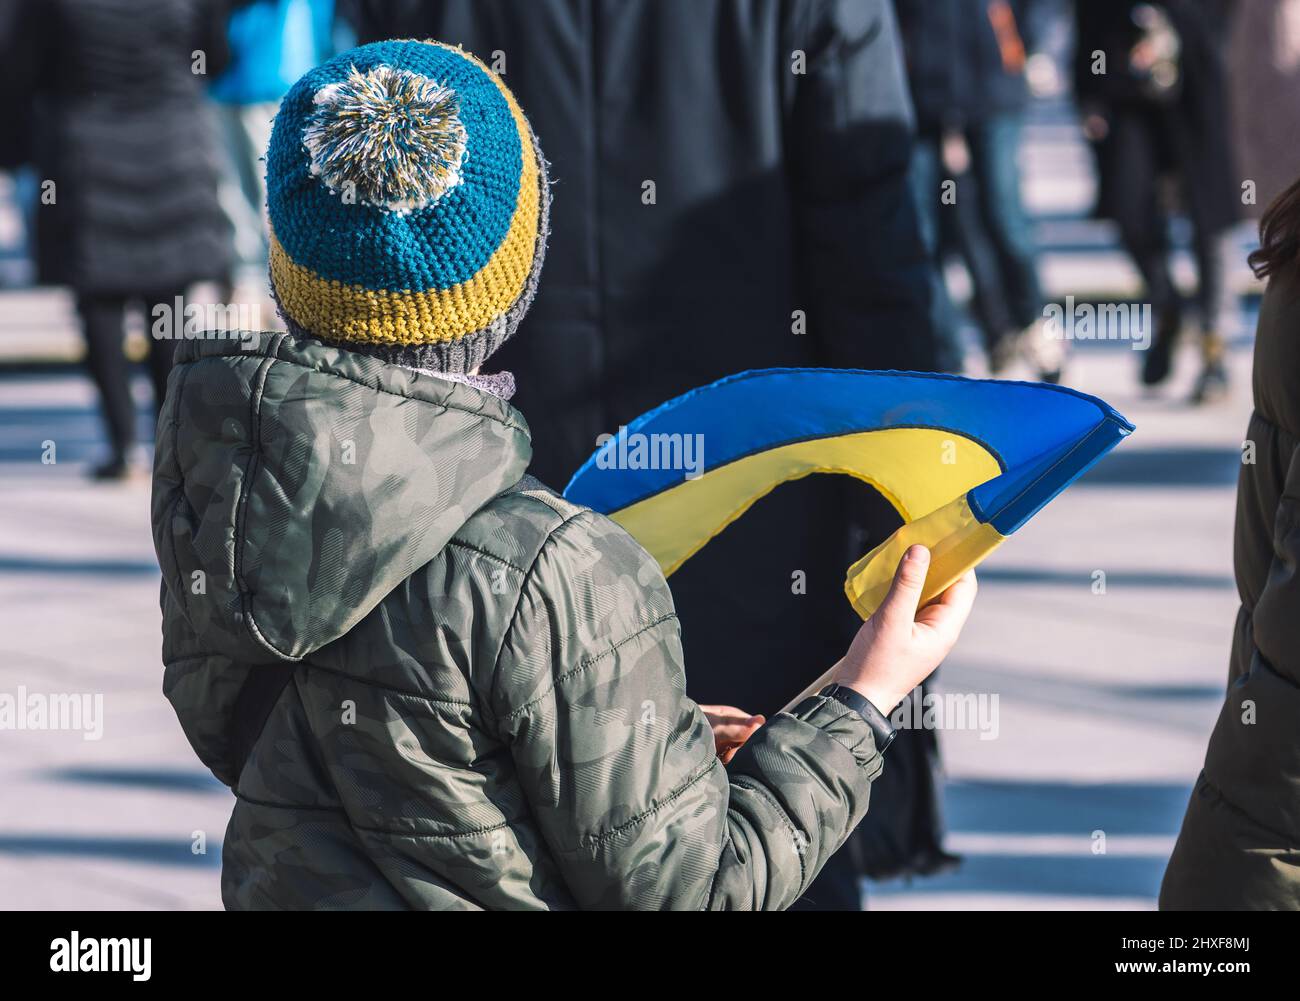 Bambino o ragazzo con abiti invernali, bandiera e cappello ucraino,  rifugiati durante la guerra in Ucraina, causati da Putin e Russia Foto  stock - Alamy